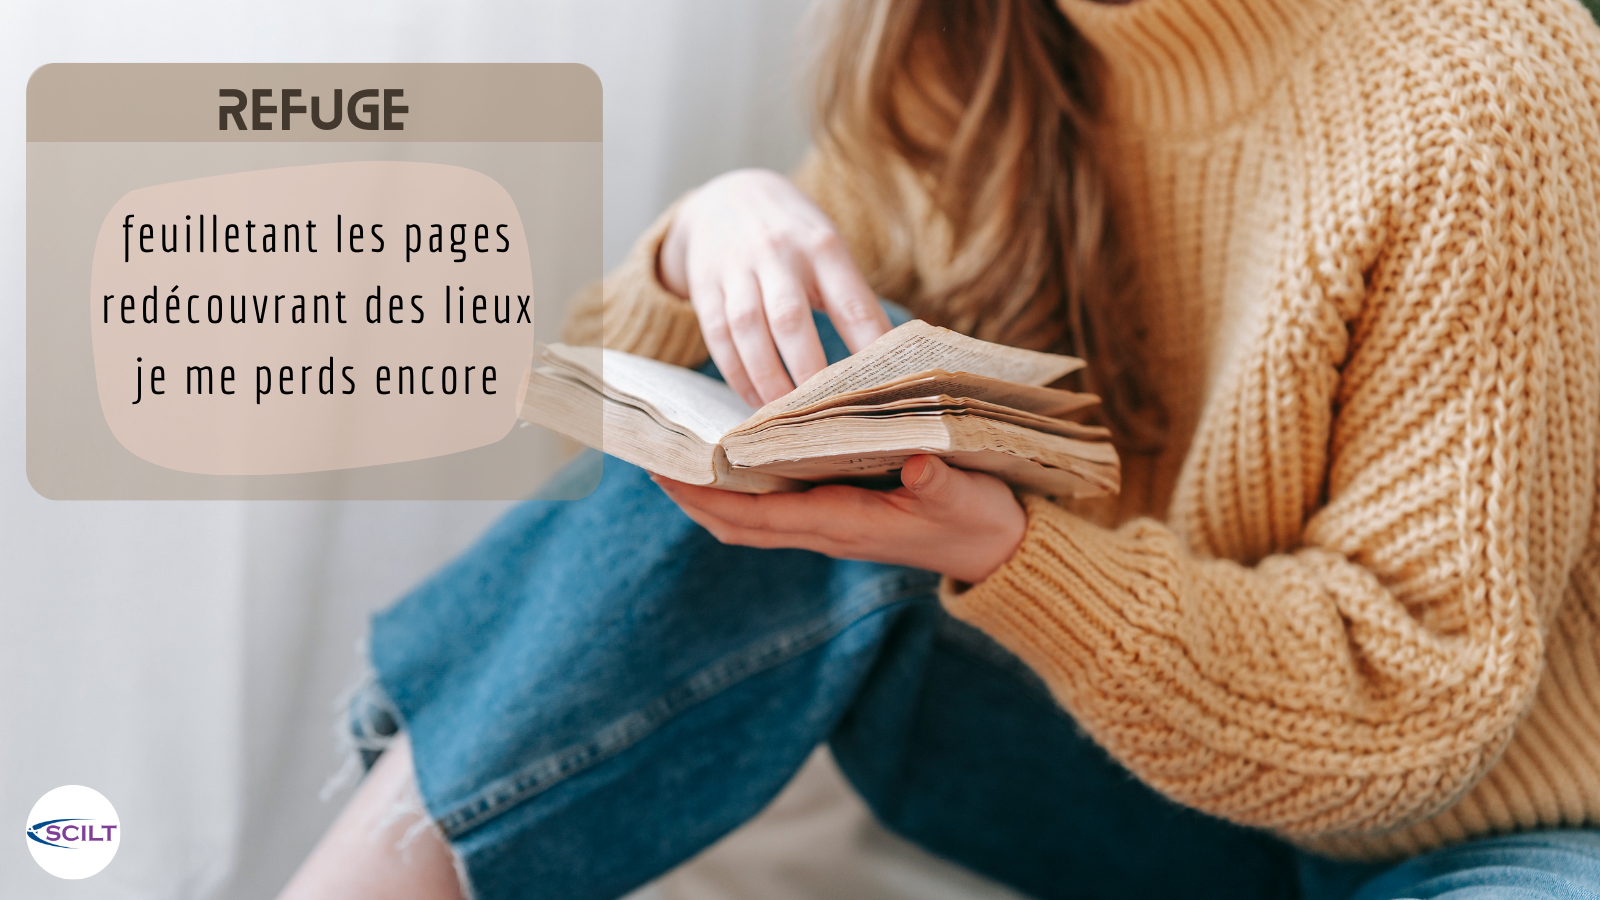 French haiku poem on the subject of Refuge